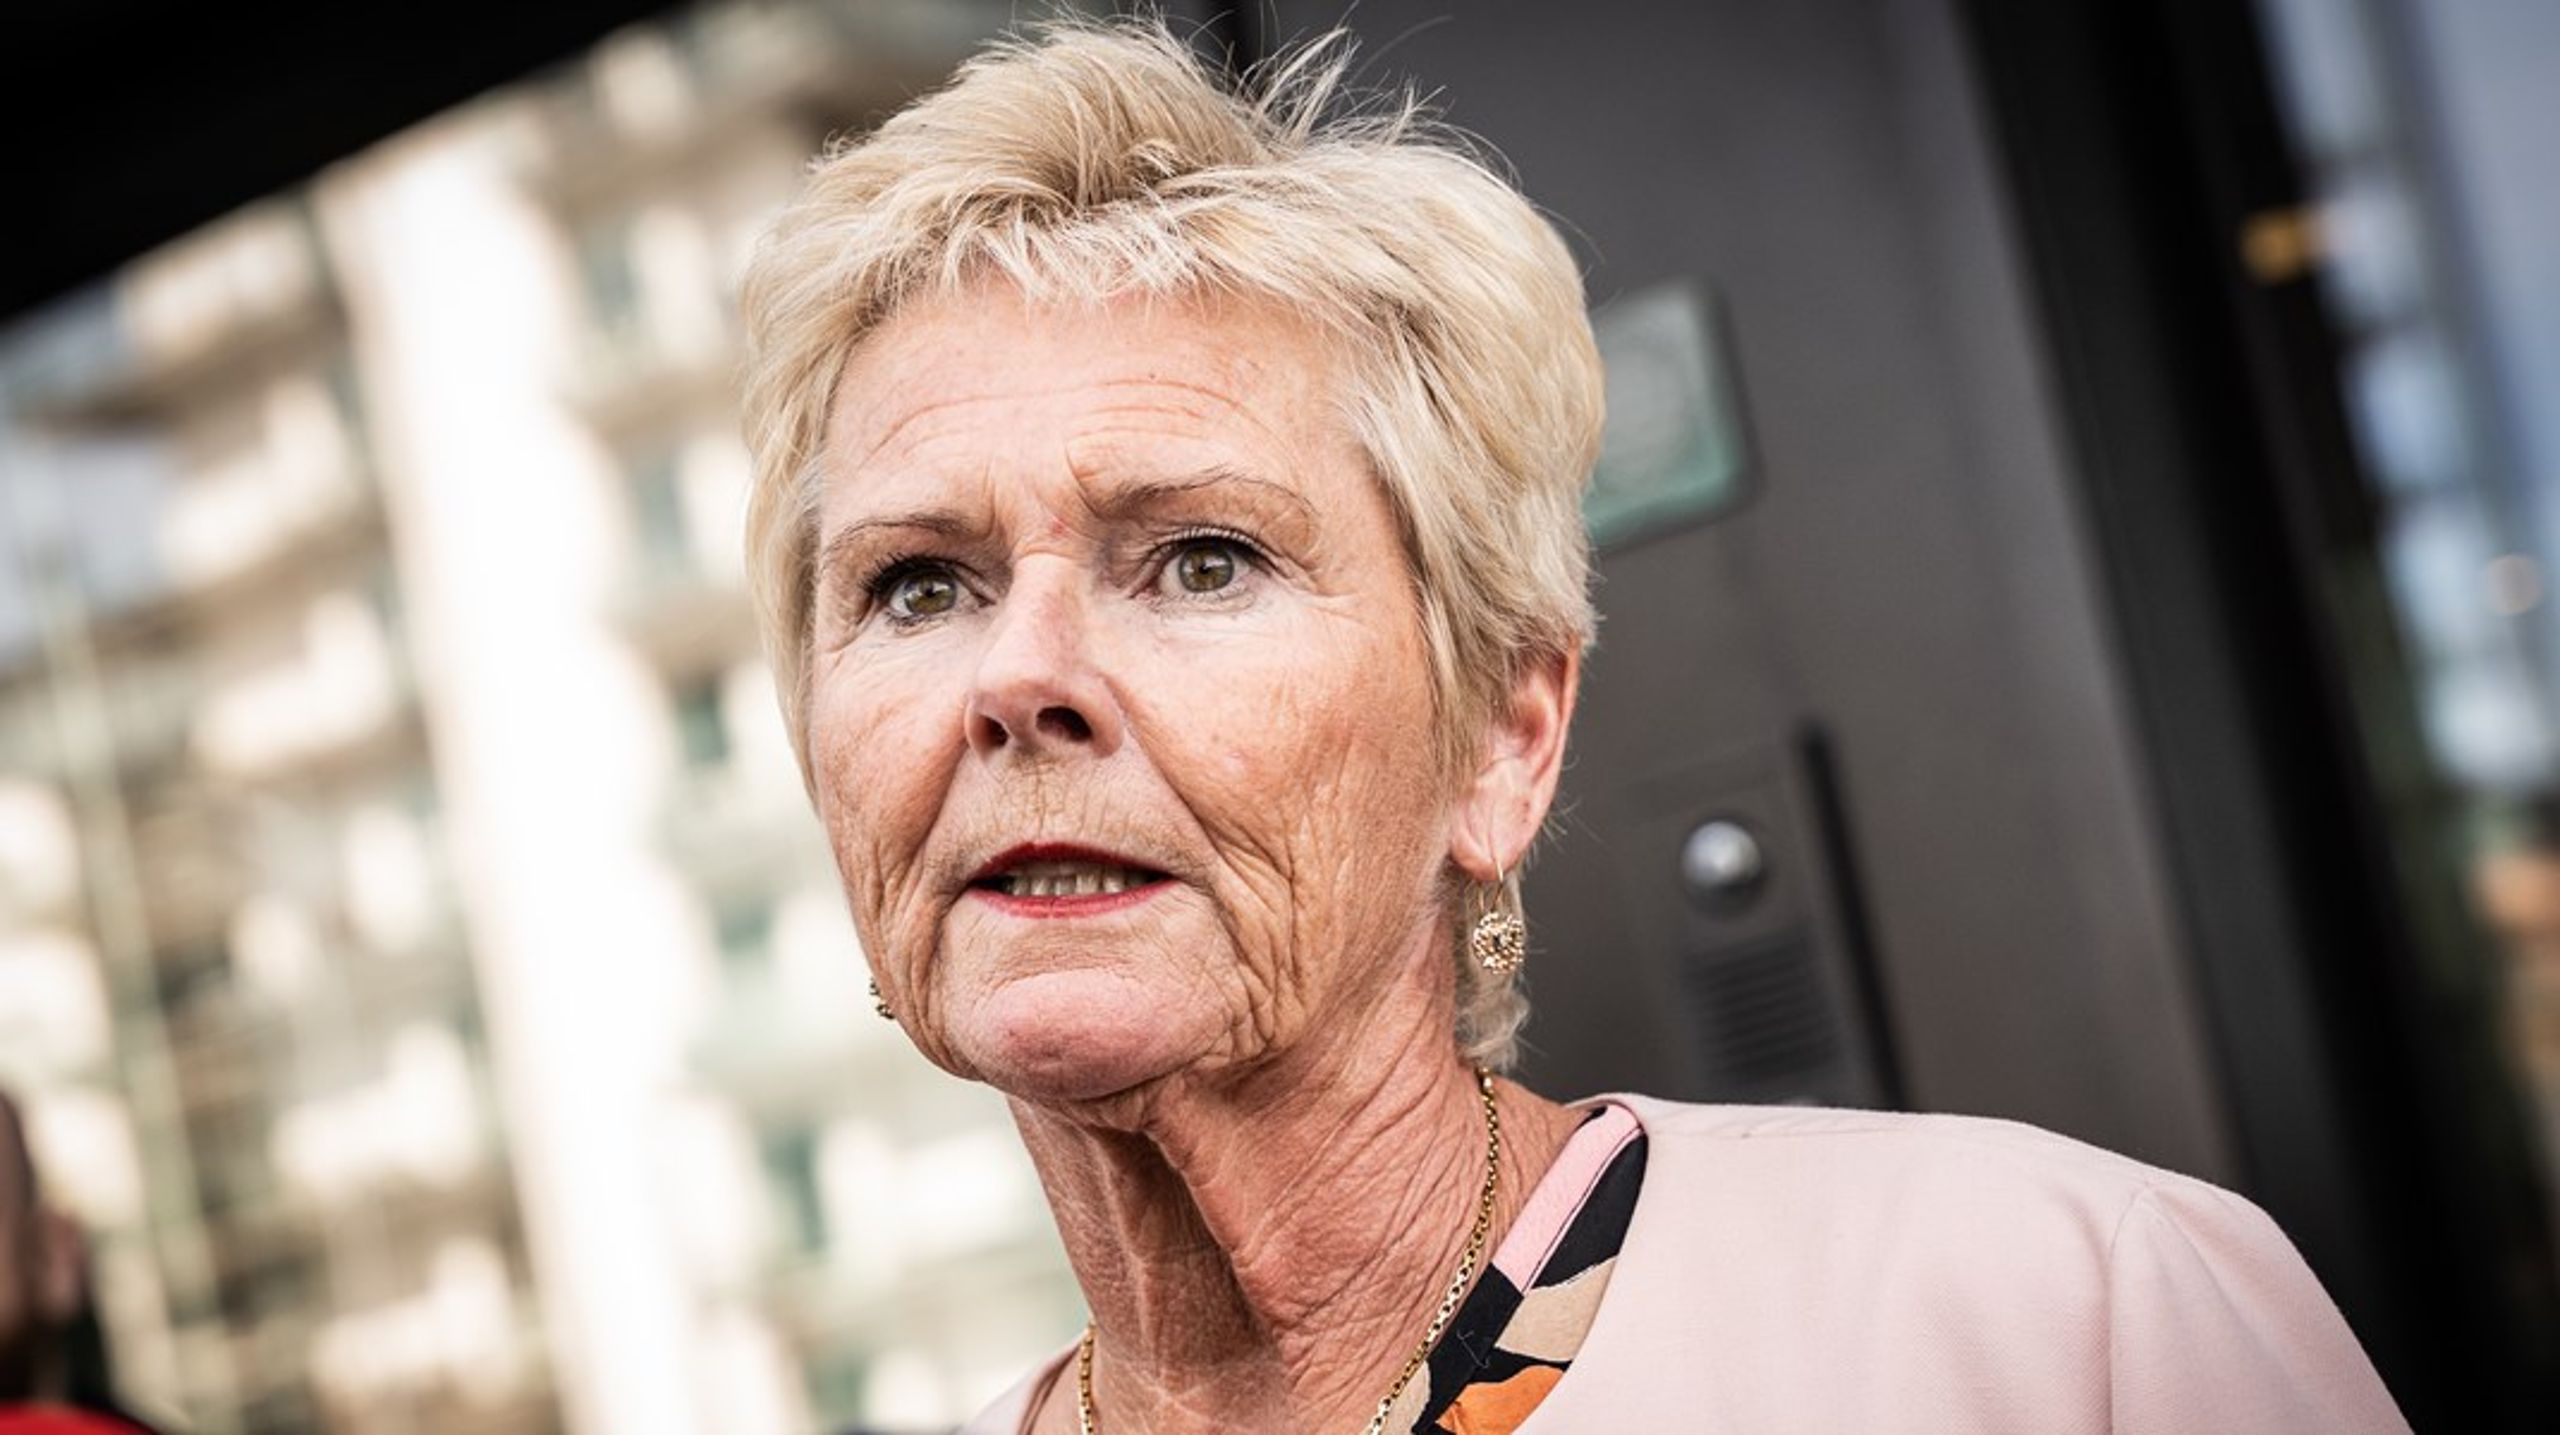 Søndag den 30. april trak Lizette Risgaard sig som formand for Fagbevægelsens Hovedorganisation (FH). Hun har nu forladt Nationalbanken som følge deraf.